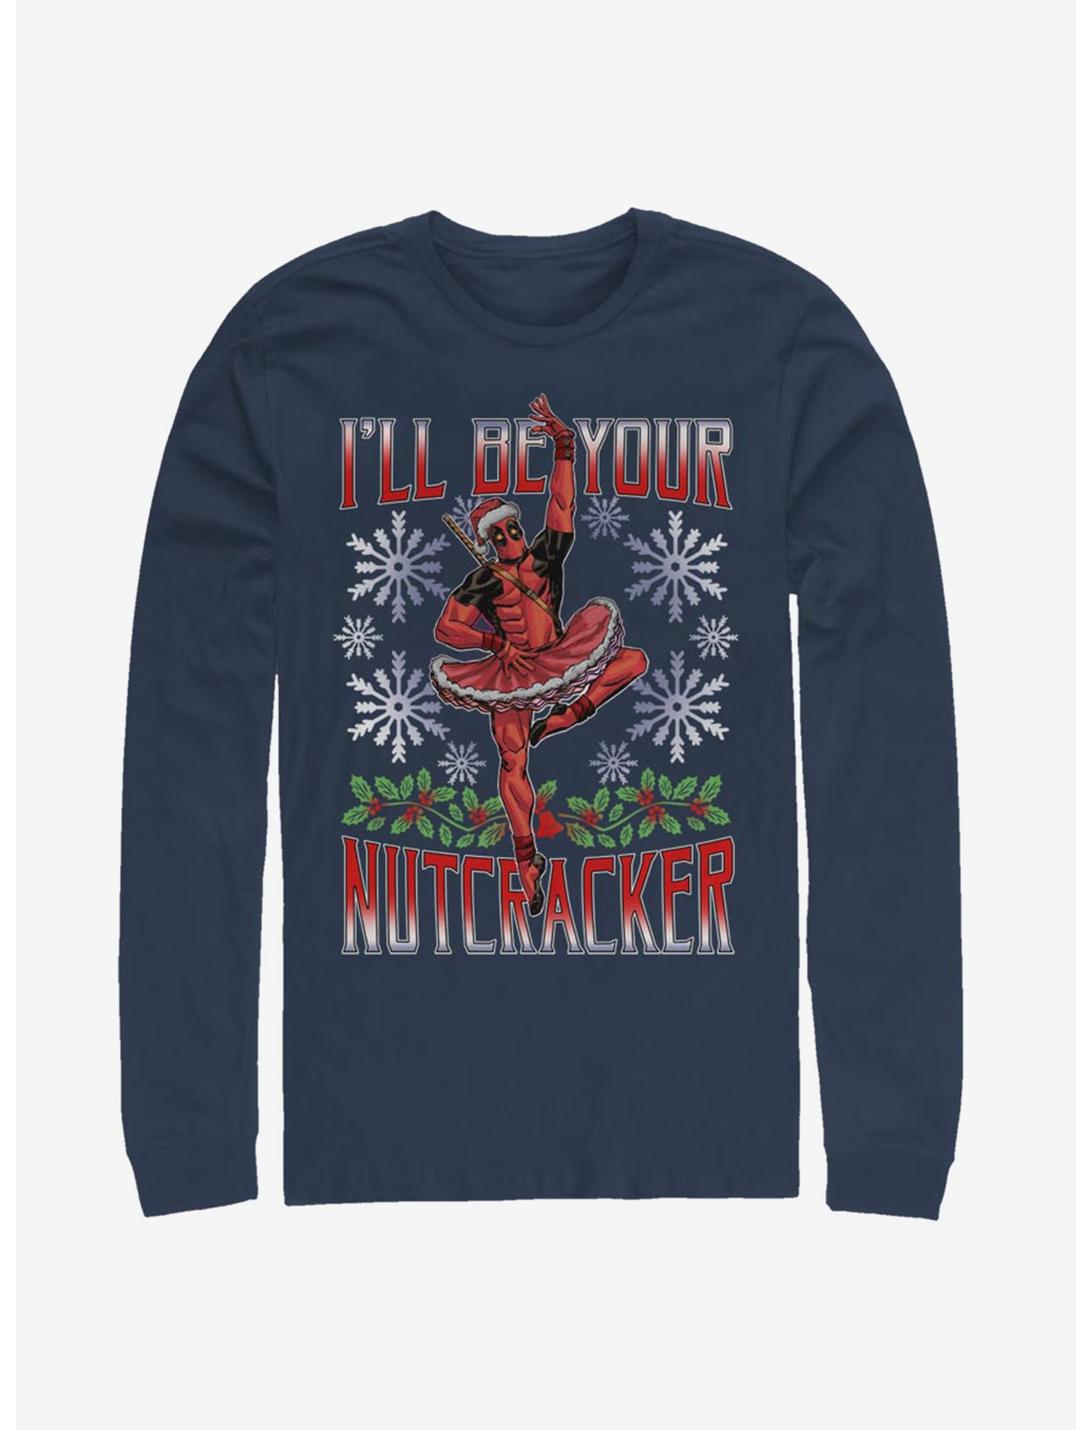 Plus Size Marvel Deadpool Nutcracker Long-Sleeve T-Shirt, NAVY, hi-res